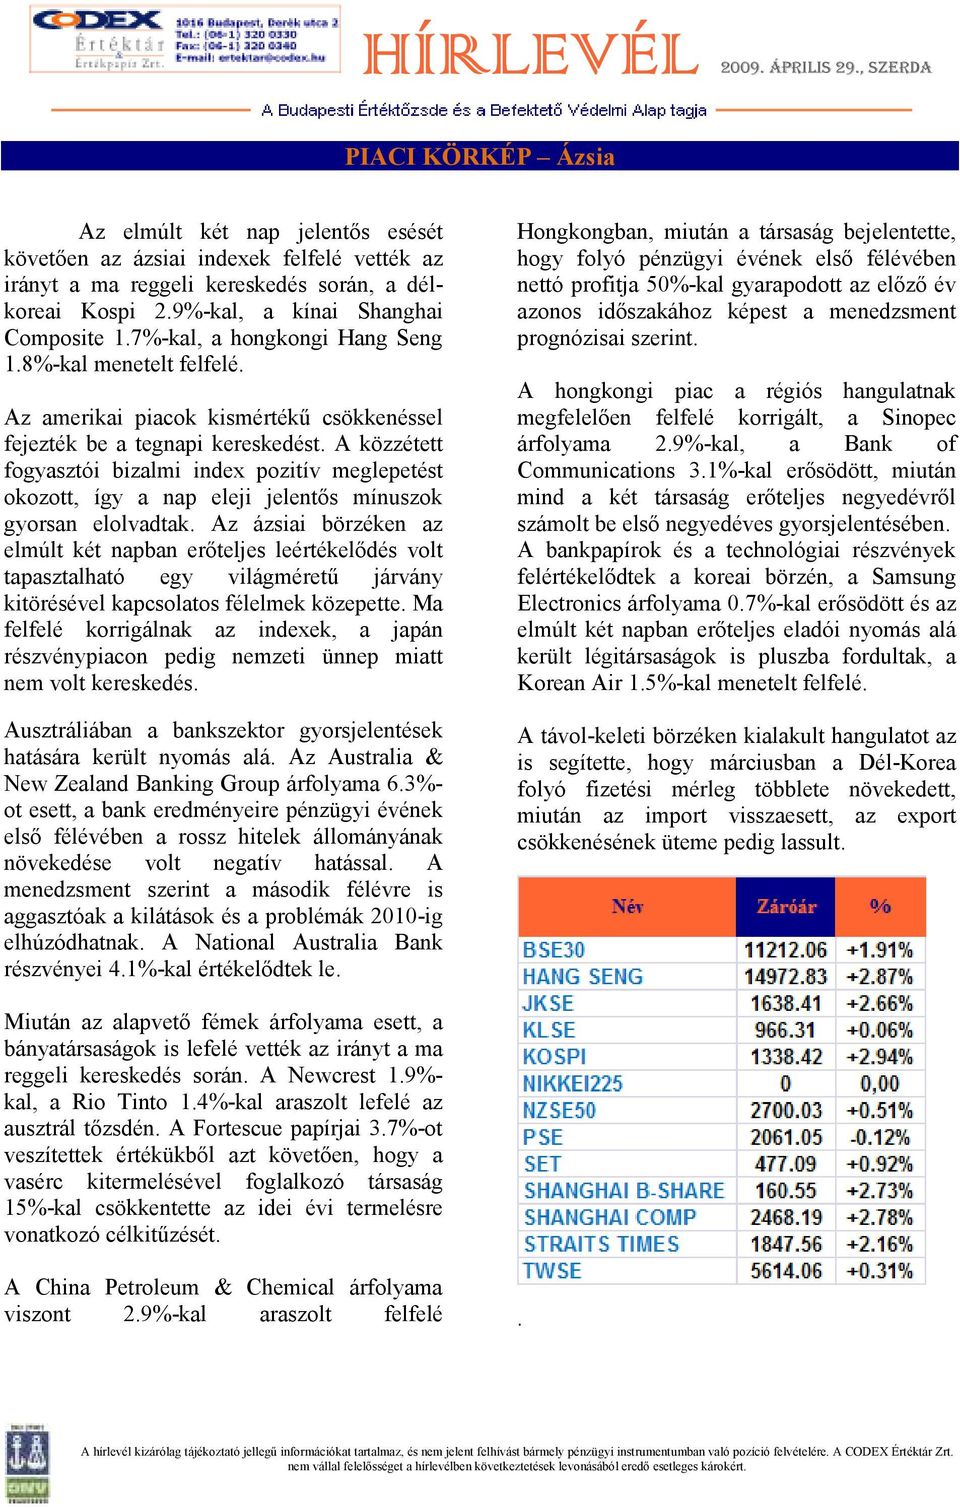 A közzétett fogyasztói bizalmi index pozitív meglepetést okozott, így a nap eleji jelentıs mínuszok gyorsan elolvadtak.